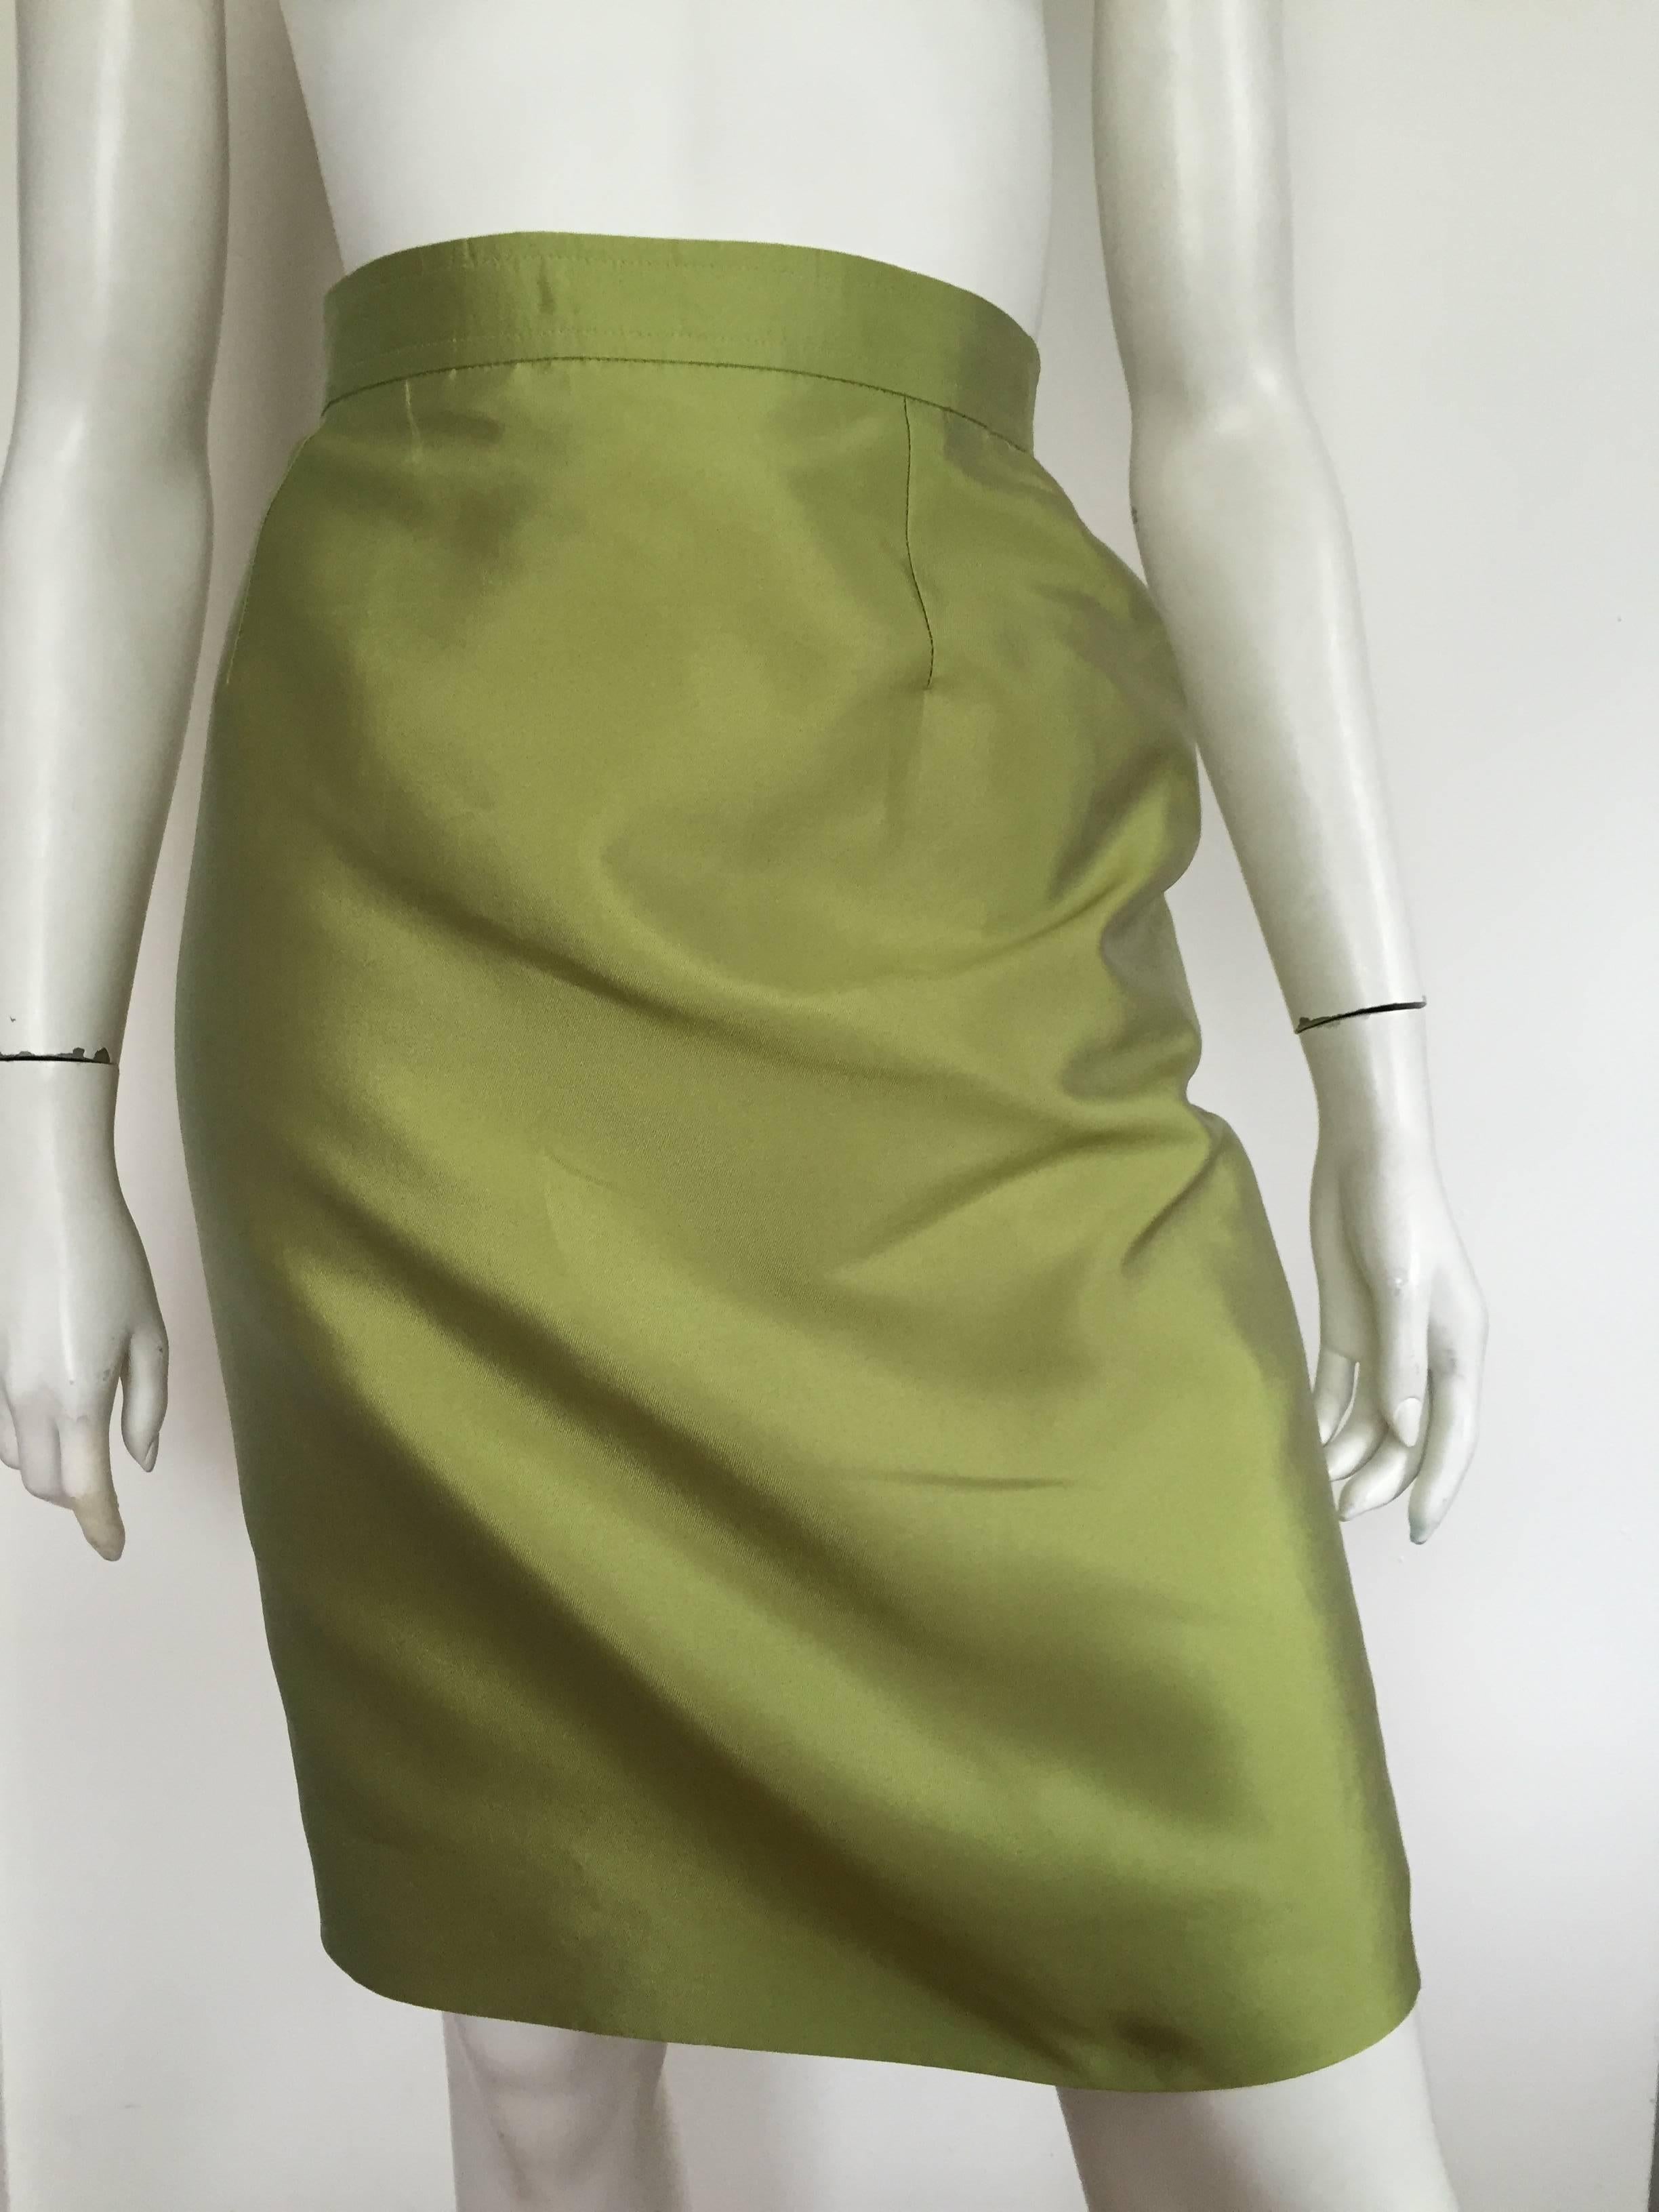 Christian Lacroix 80s silk skirt suit size 4. 3